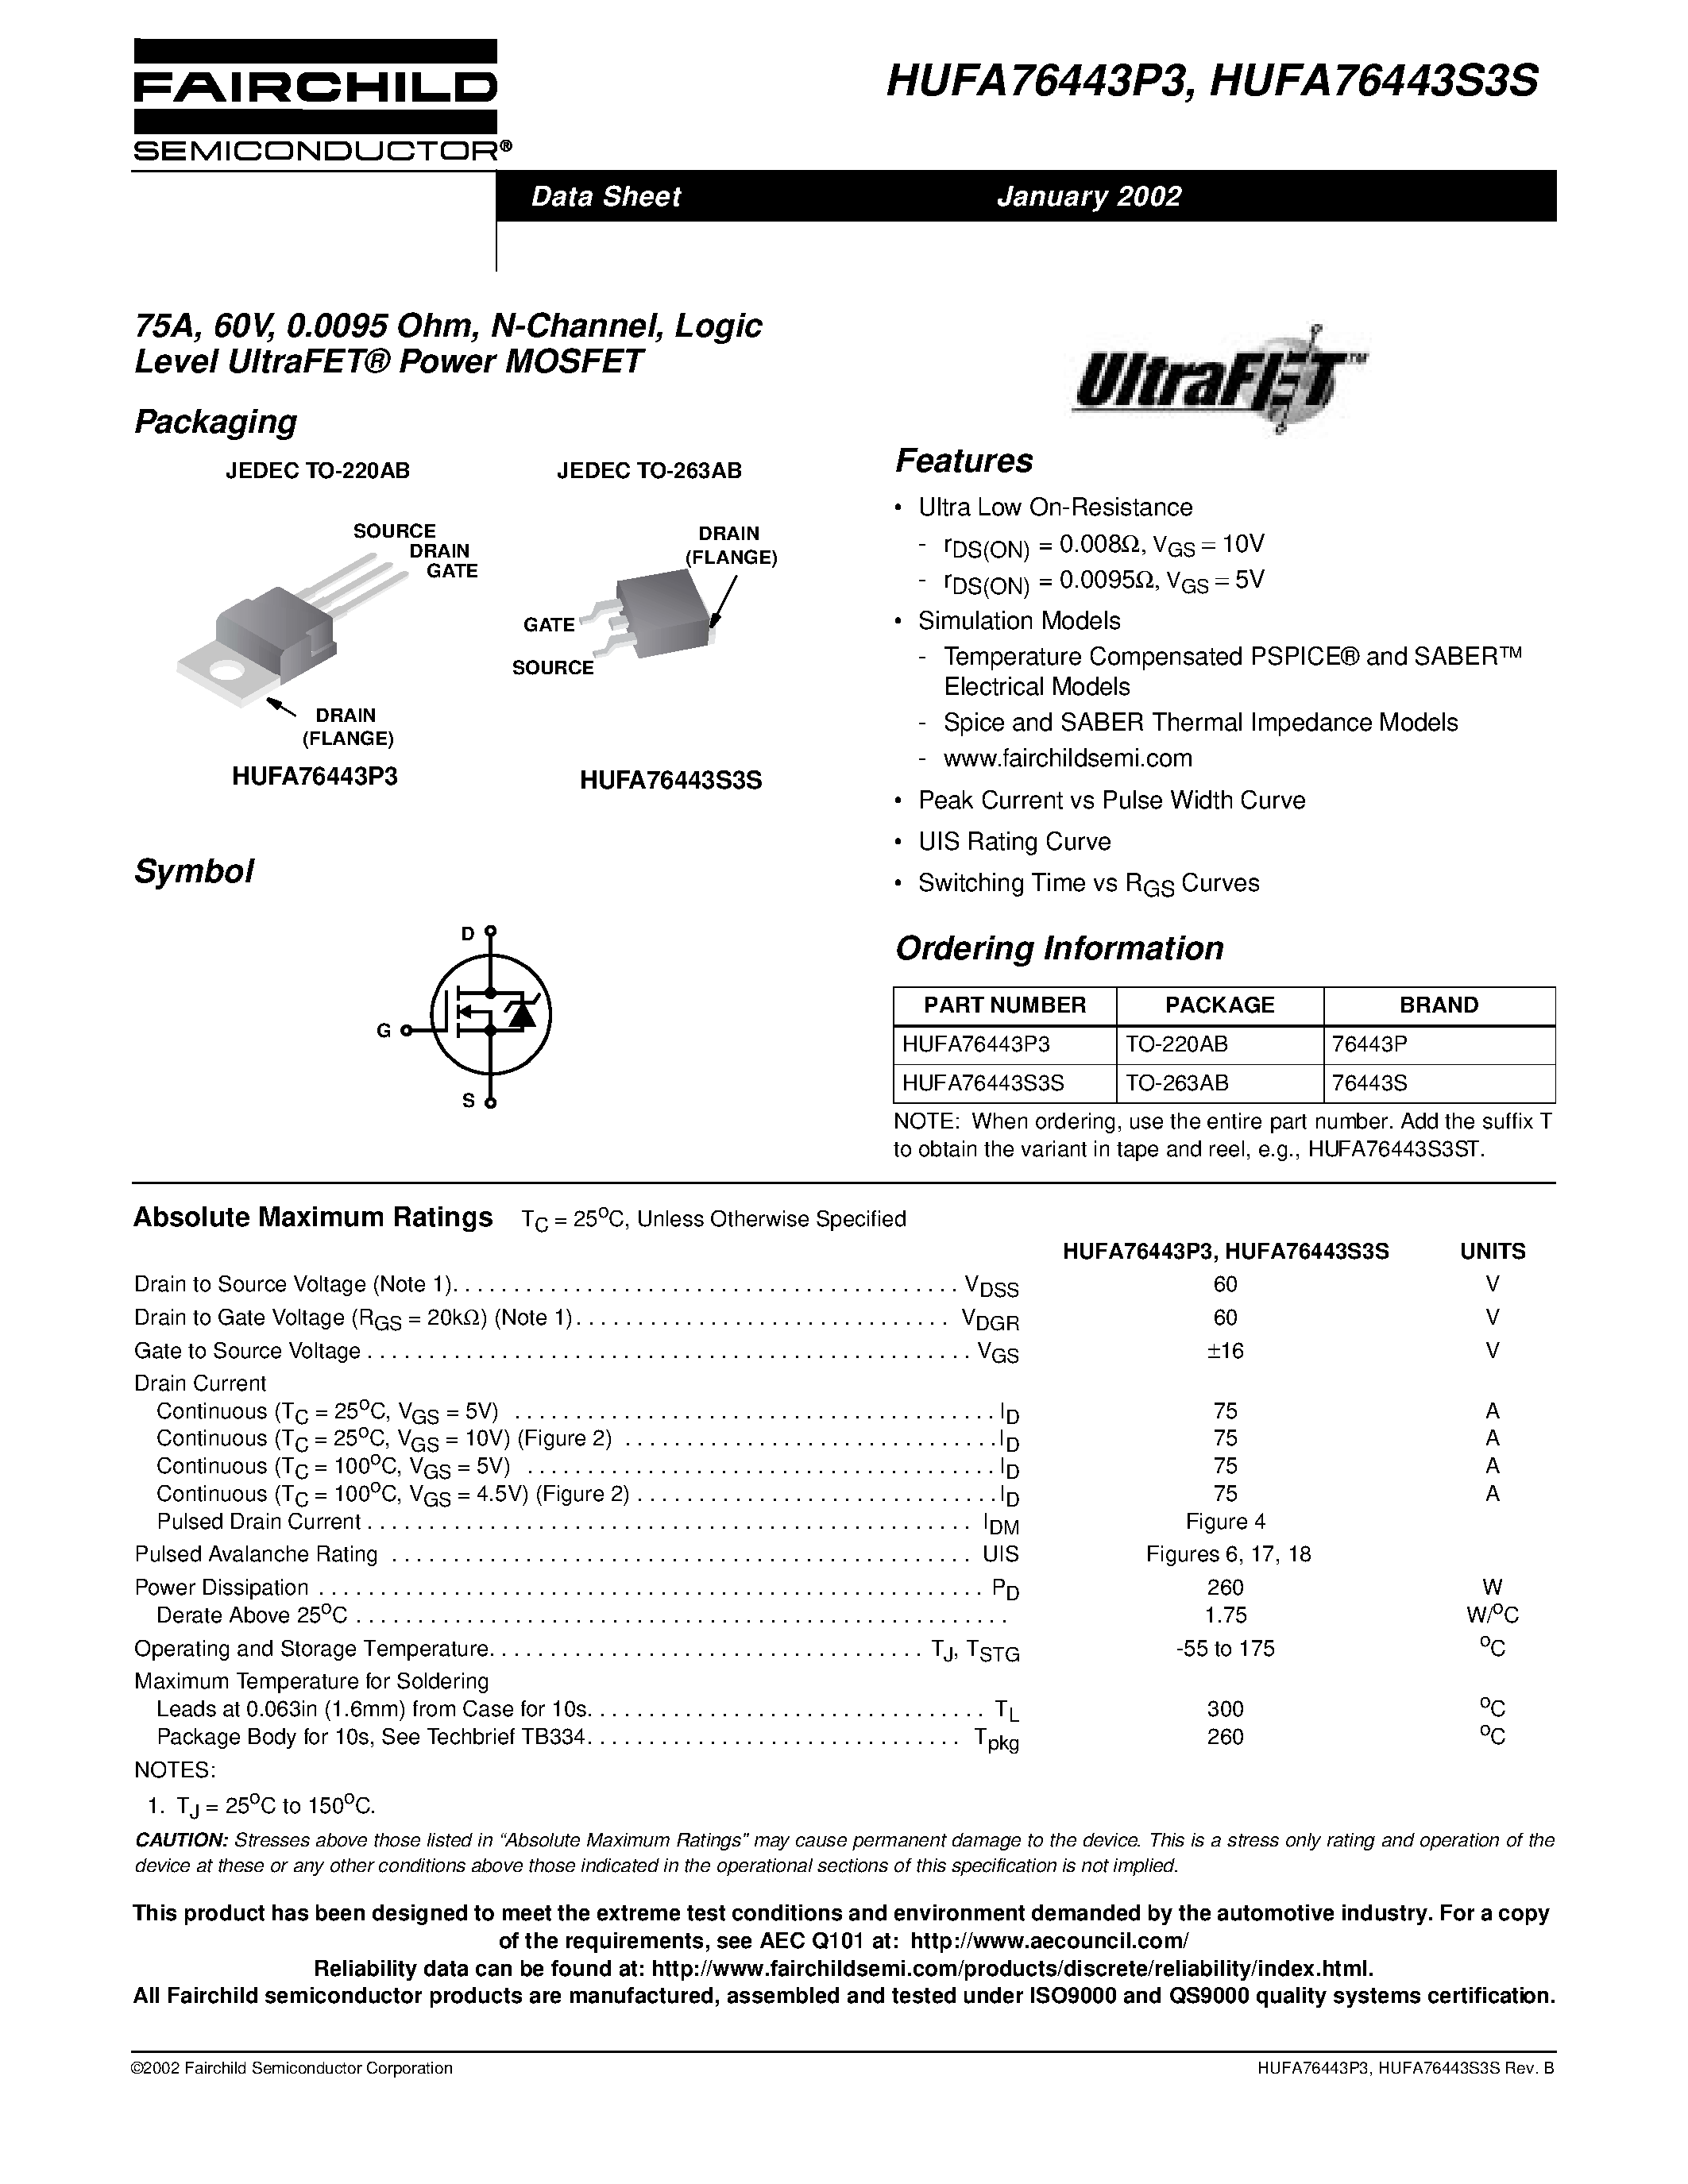 Даташит HUFA76443P3-75A/ 60V/ 0.0095 Ohm/ N-Channel/ Logic Level UltraFET Power MOSFET страница 1